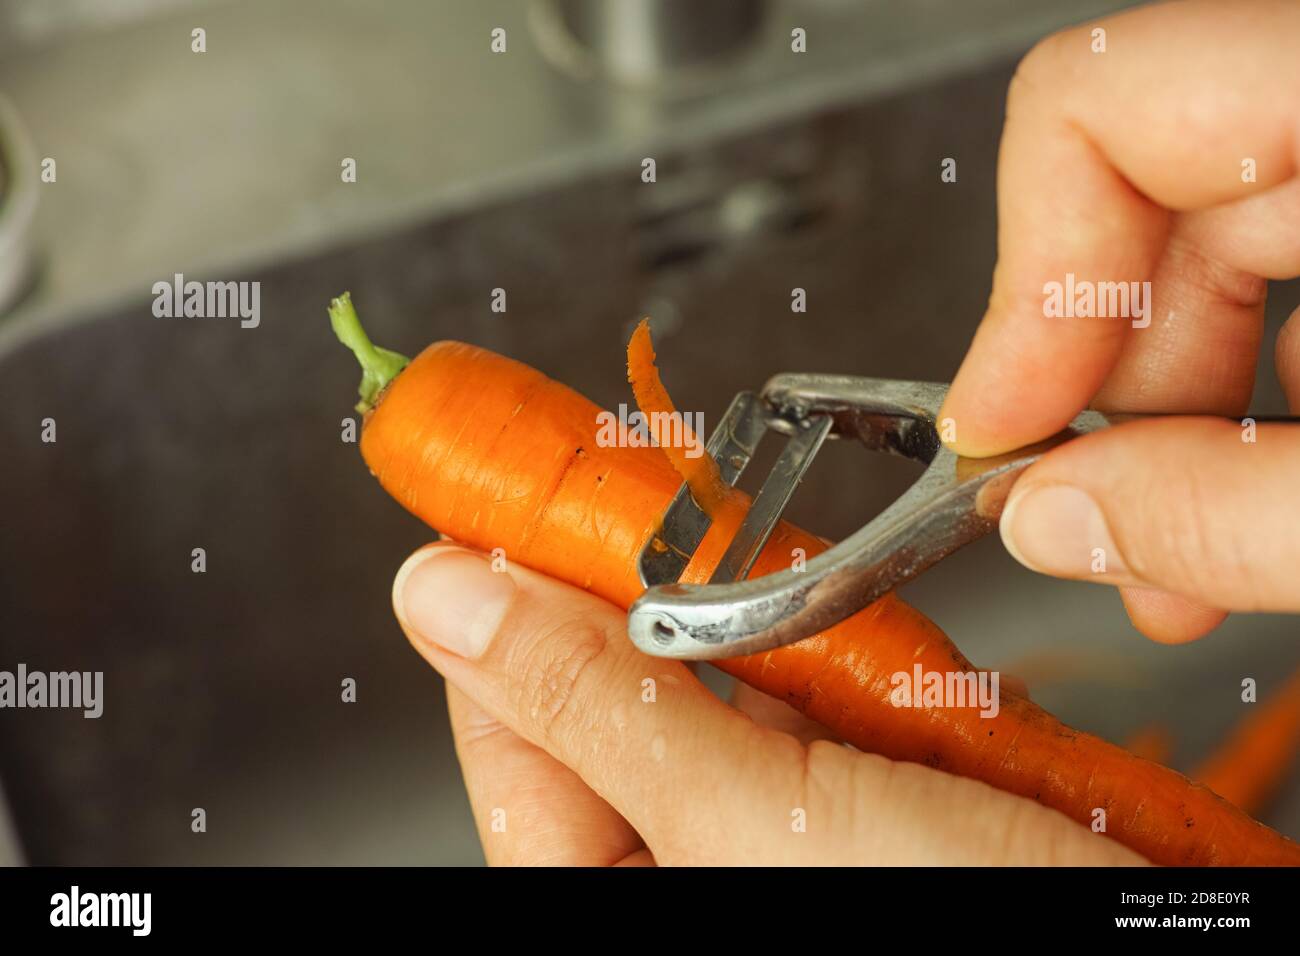 https://c8.alamy.com/comp/2D8E0YR/person-peeling-a-carrot-with-a-peeler-close-up-2D8E0YR.jpg